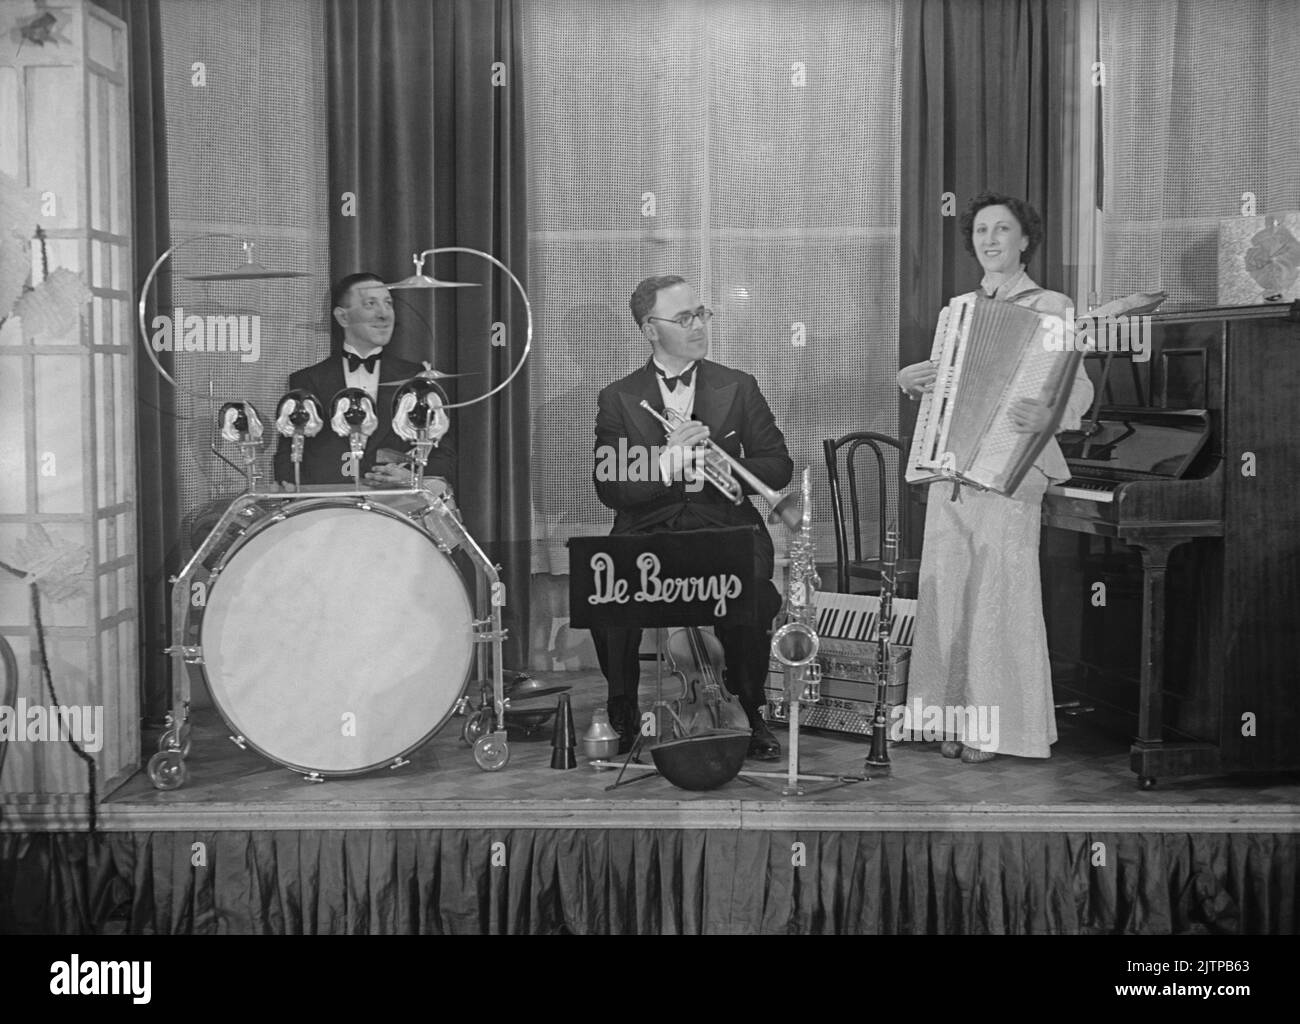 Eine britische Tanzband, das De Berrys Trio, auf der Bühne im Whitehall Court Hotel, London, England, Großbritannien im Dezember 1937. Frühe Tanz- und Swing-Bands hatten ihre Blütezeit in Großbritannien während der Jahre 1920s–30s. Bands spielten in Tanzsälen und Hotelballsälen. Sie spielten melodische, gute-Zeit-Musik und einzelne Spieler spielten in mehreren Bands. Dieses Bild stammt aus einem alten Glas-Negativ – einem Vintage-Foto aus dem Jahr 1930s. Stockfoto